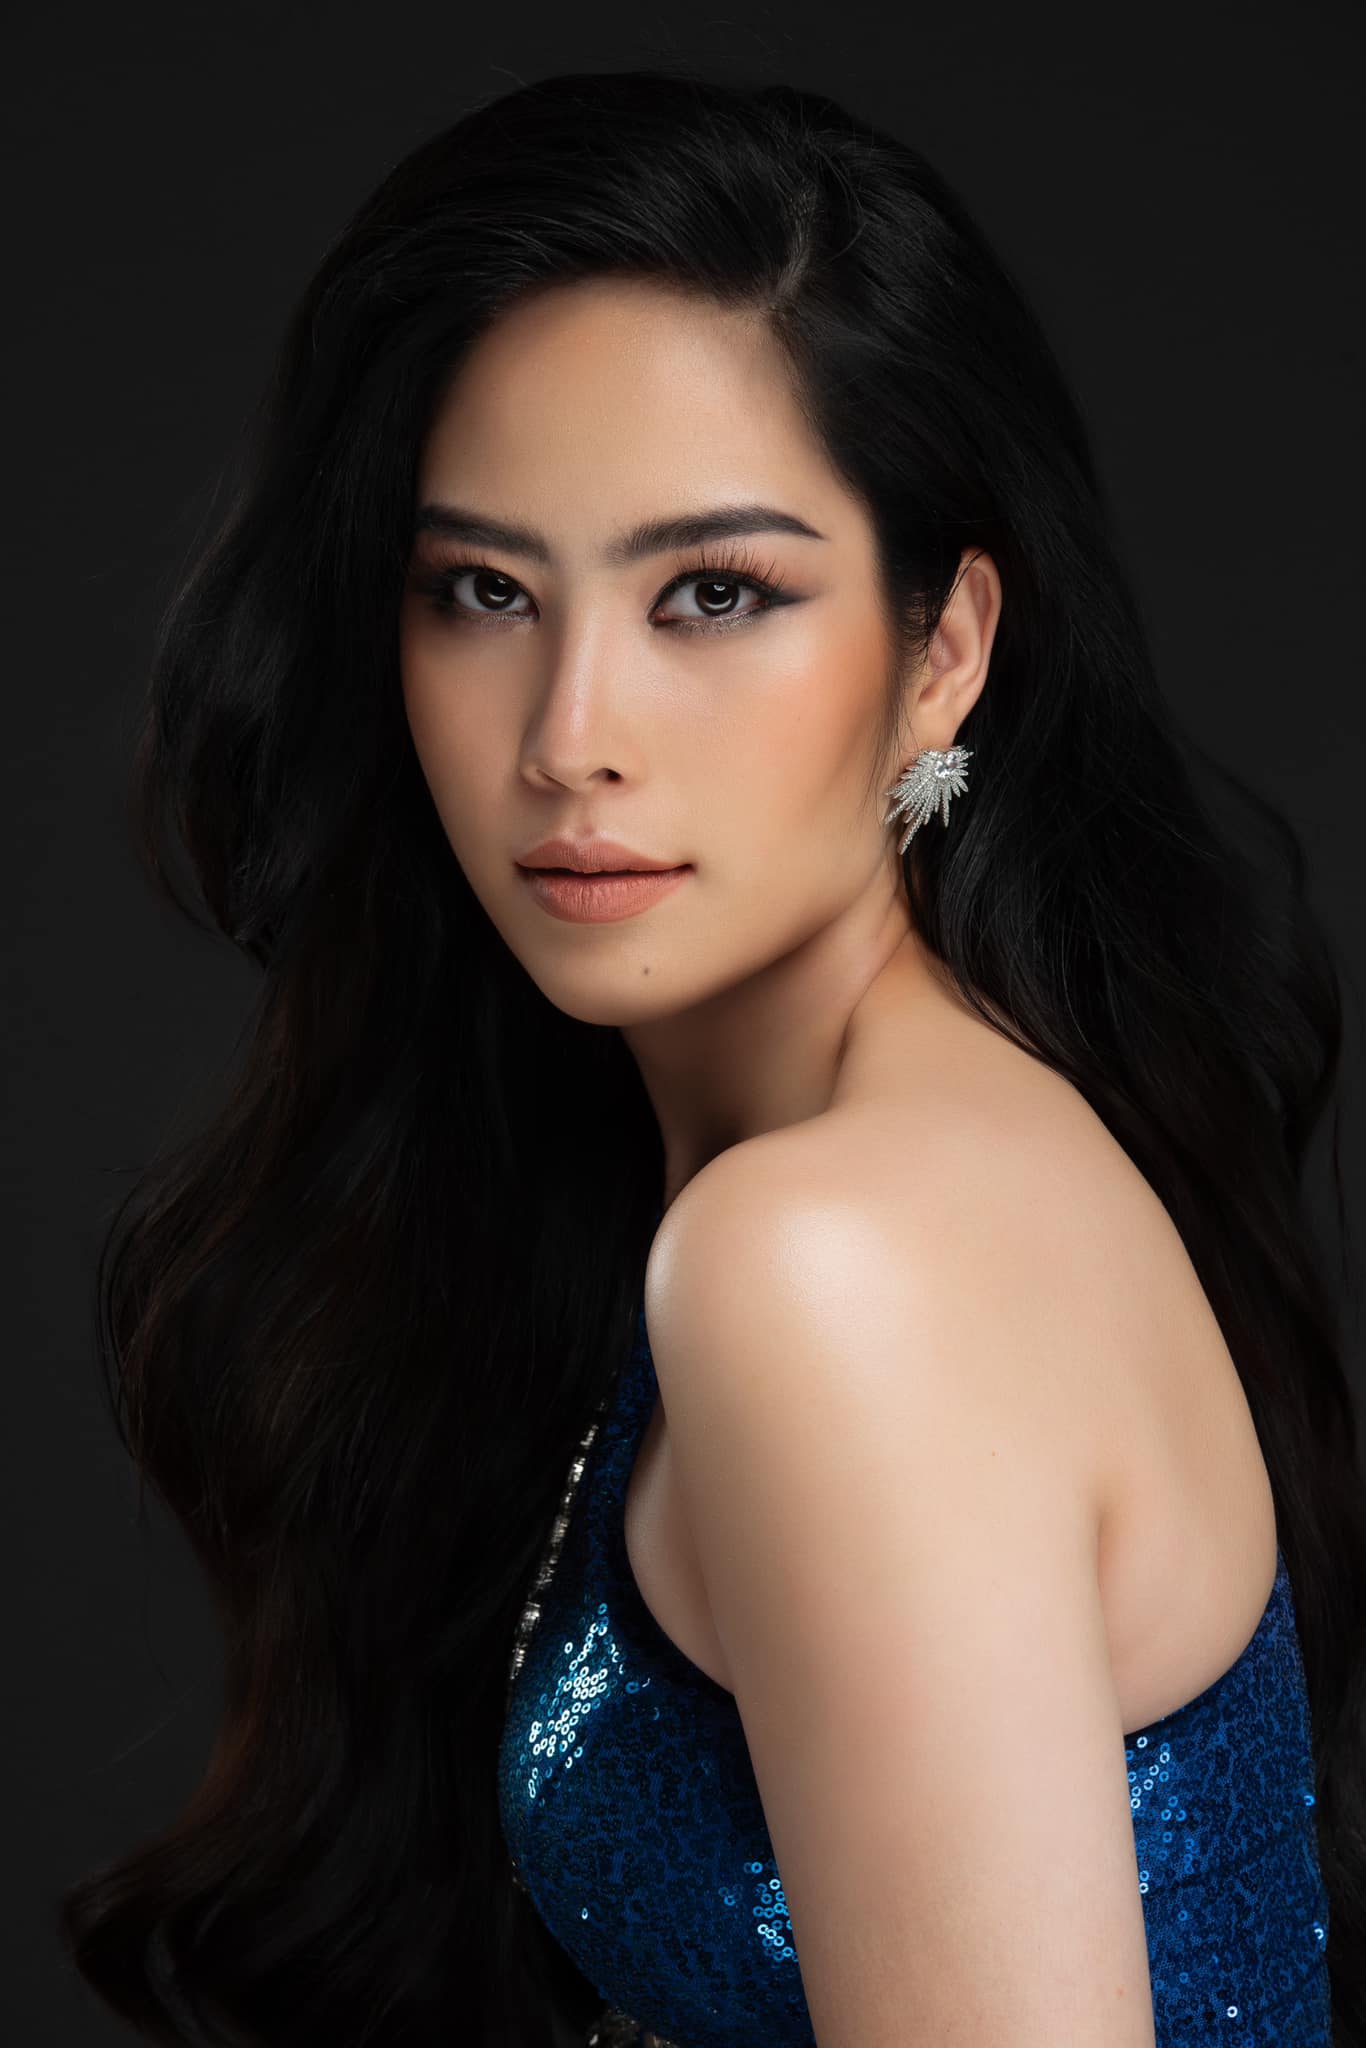 Chung khảo toàn quốc Miss World Vietnam 2022: Nam Em lộ vóc dáng mũm mĩm, liệu có đọ lại dàn mỹ nhân trẻ?